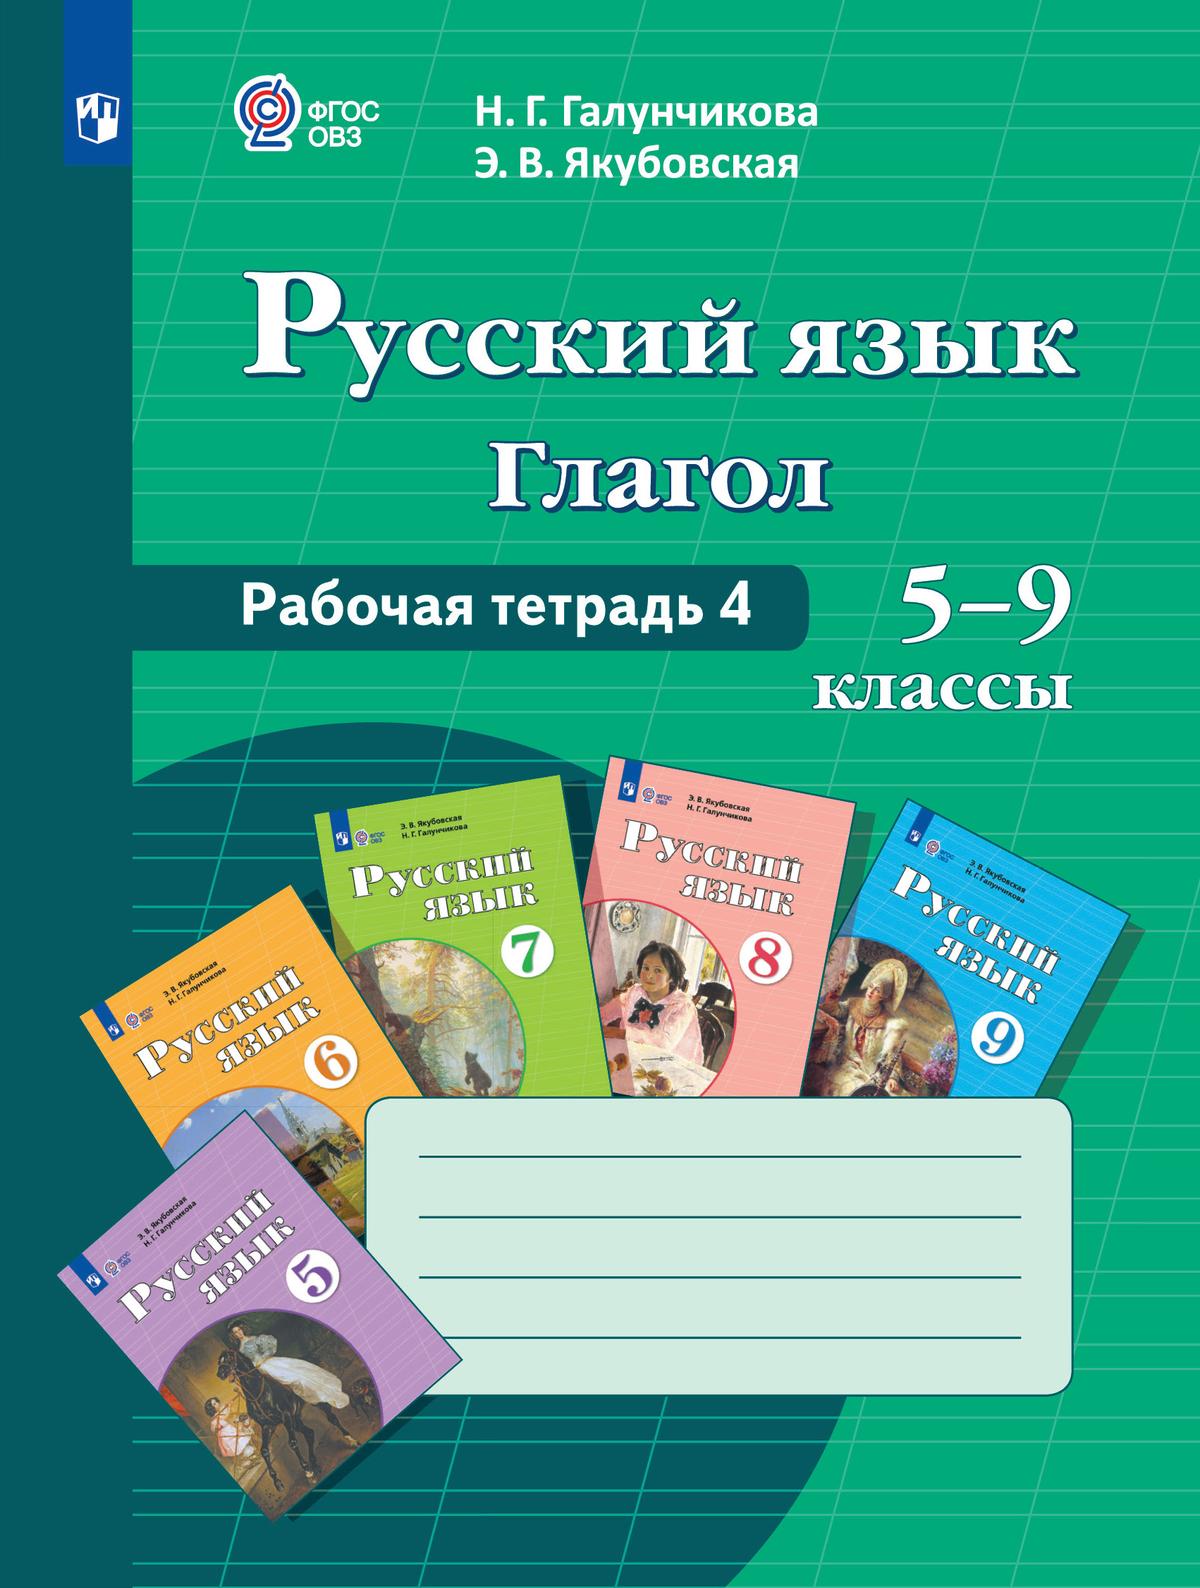 Русский язык. Глагол. 5-9 классы. Рабочая тетрадь 4 (для обучающихся с интеллектуальными нарушениями) 1